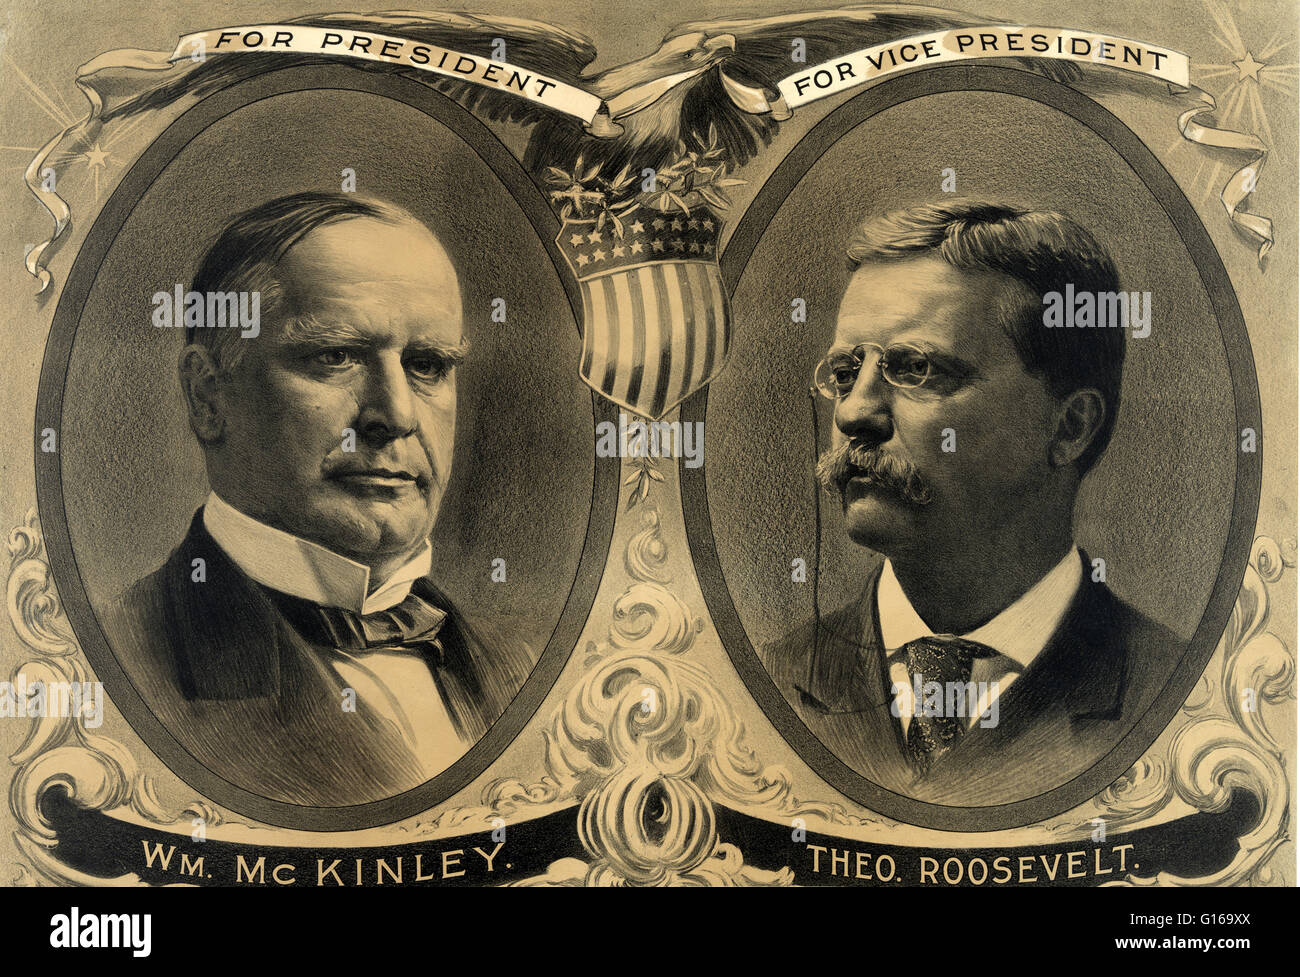 Theodore Roosevelt Kampagne Poster, 1900William und William McKinley McKinley (29. Januar 1843 - 14. September 1901) war der 25. Präsident der USA (1897-1901). Er war der letzte Präsident im amerikanischen Bürgerkrieg gedient haben. Nach dem wa Stockfoto